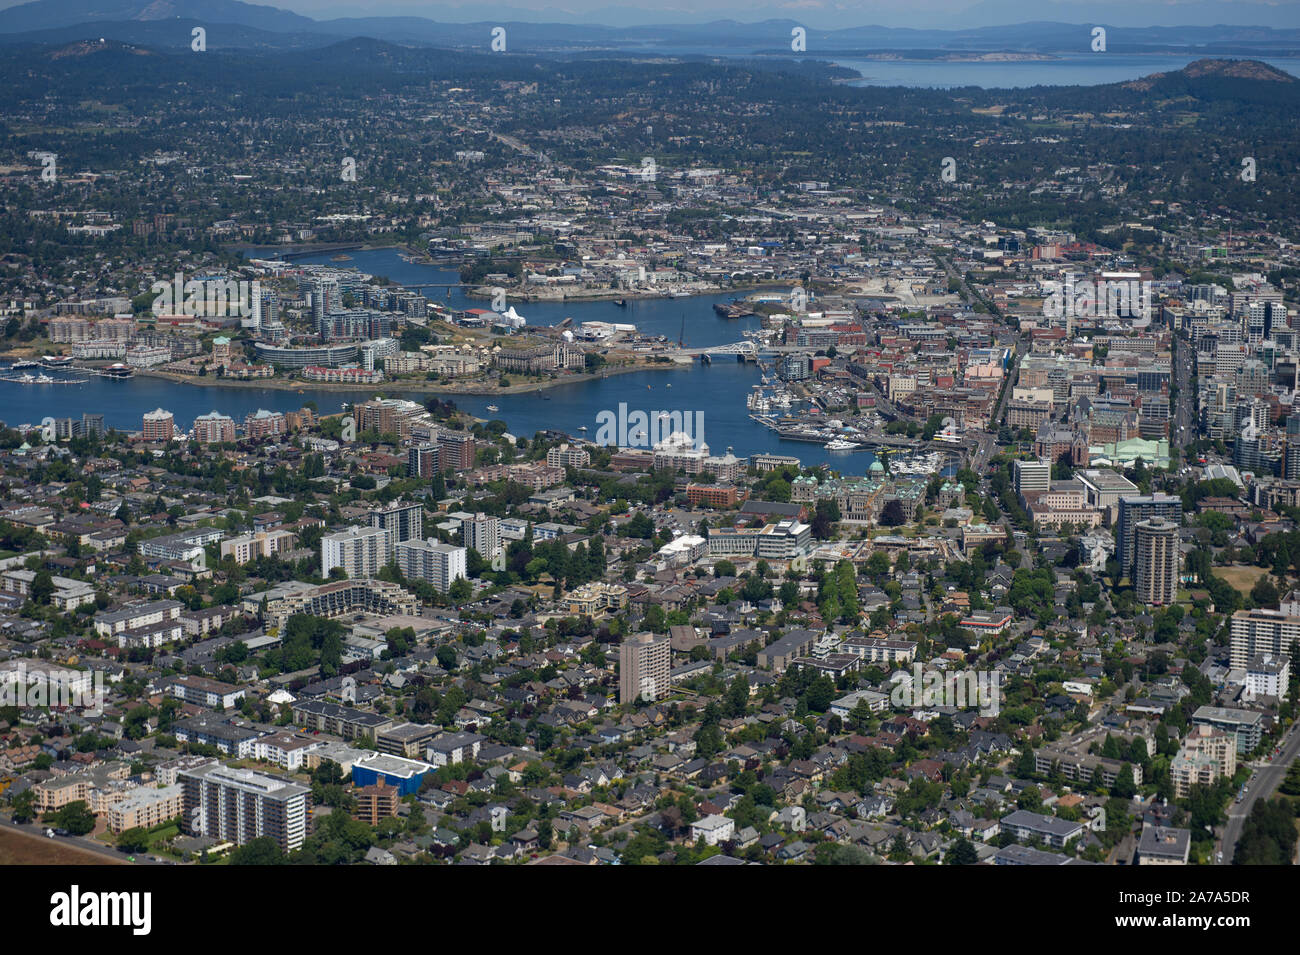 Une vue aérienne du parc Ville de Victoria, Colombie-Britannique, Canada, sur l'île de Vancouver. Banque D'Images